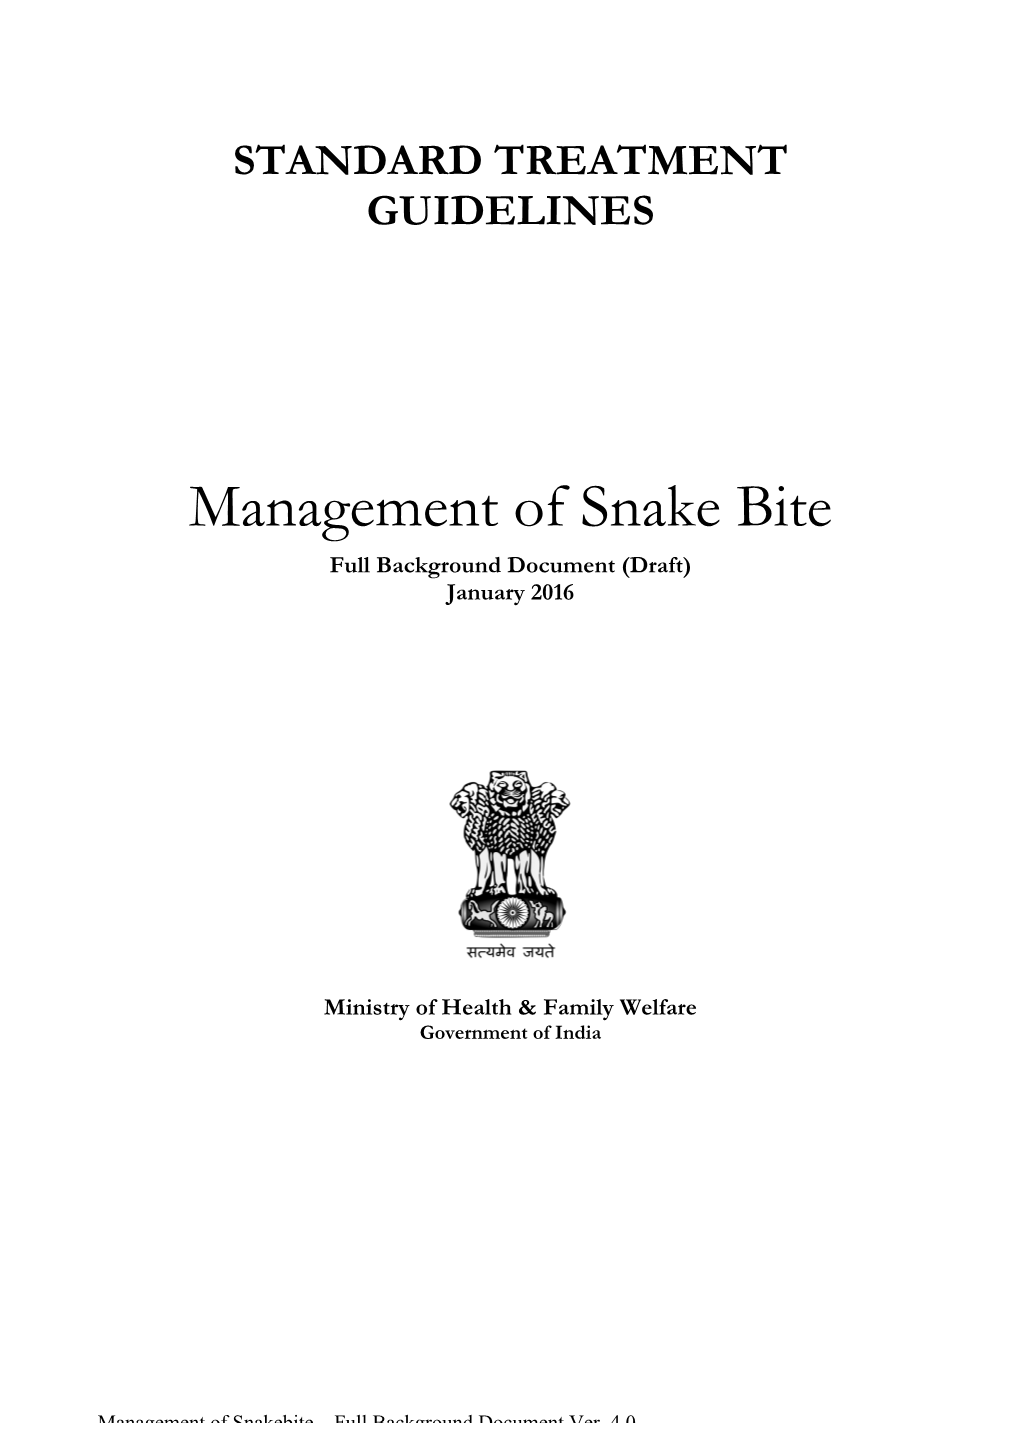 Management of Snake Bite Full Background Document (Draft) January 2016